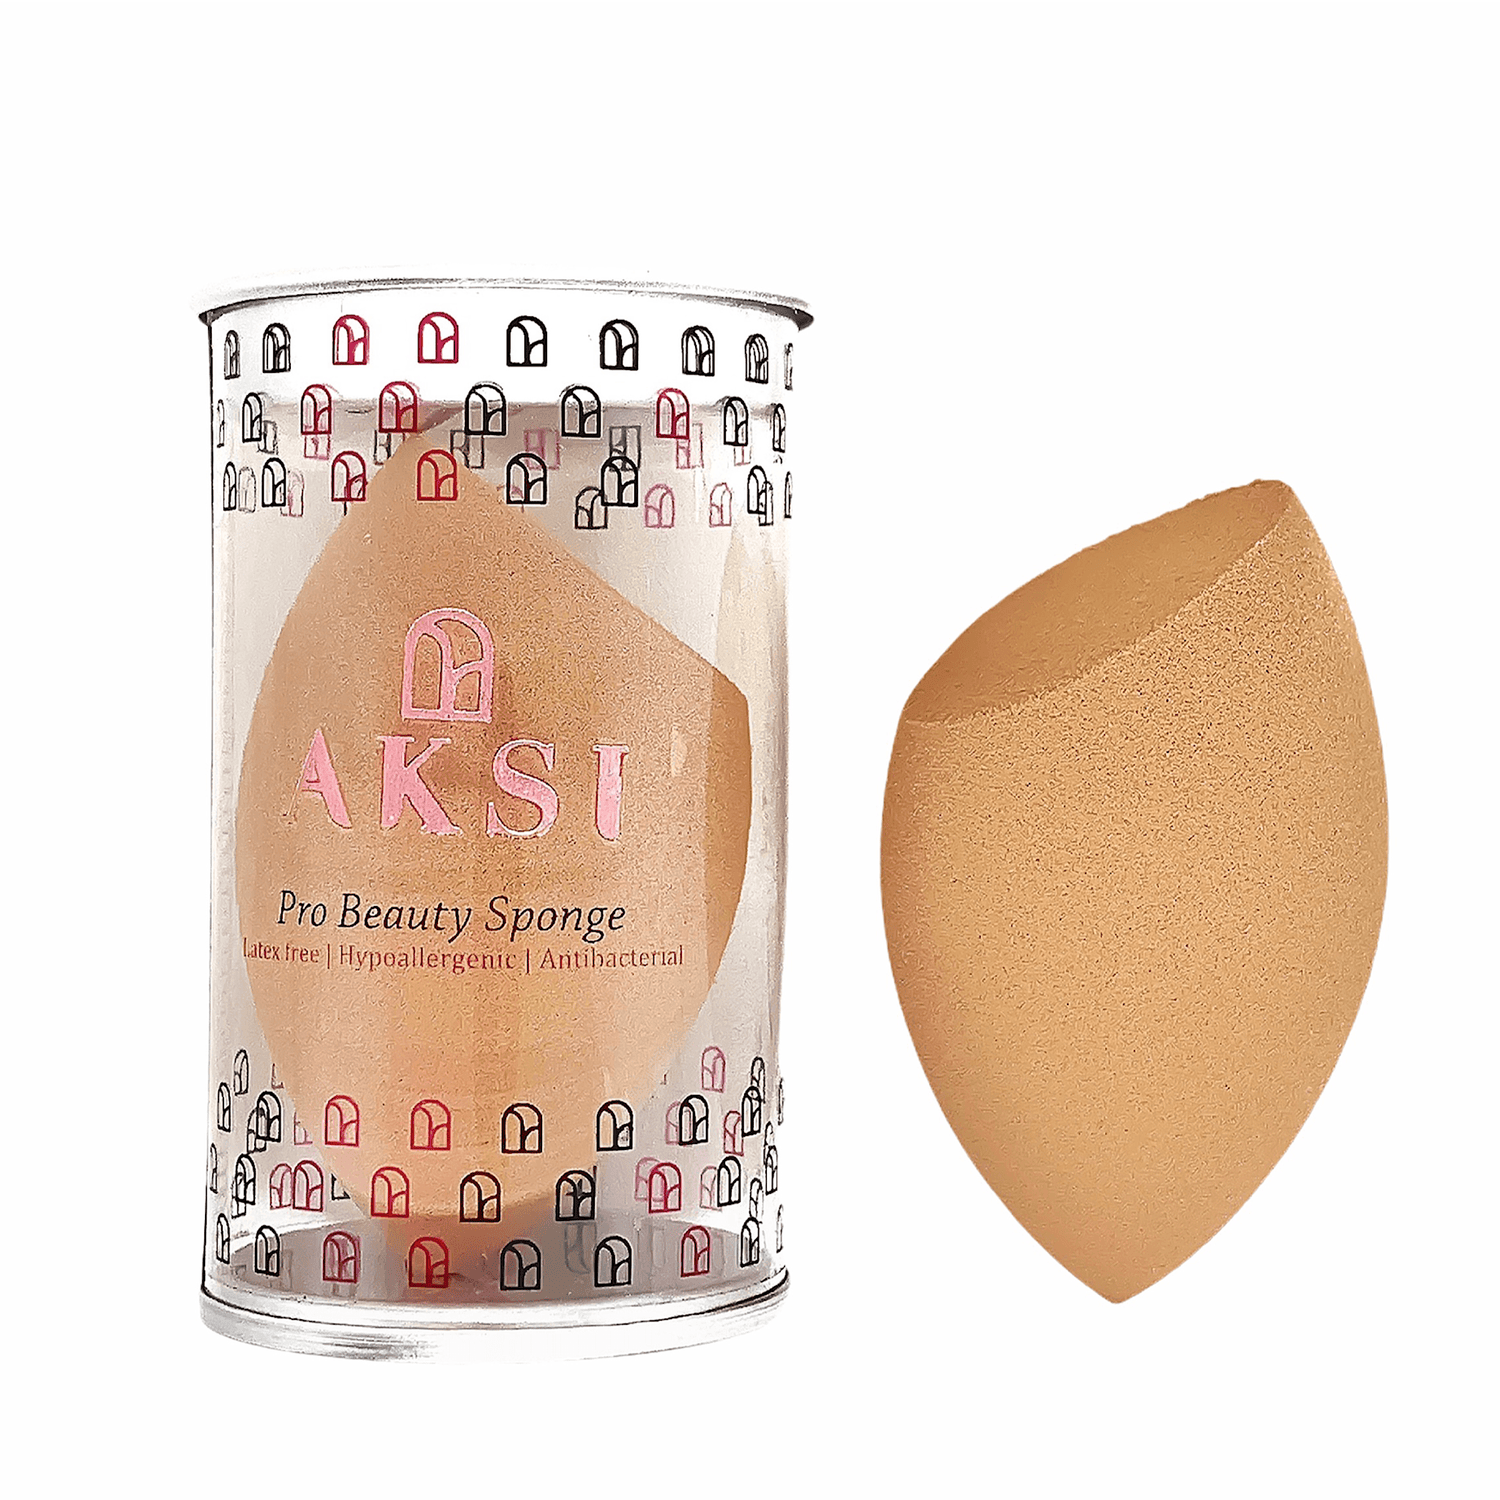 Pro Beauty Sponge (Coffee bean) - AKSI Beauty